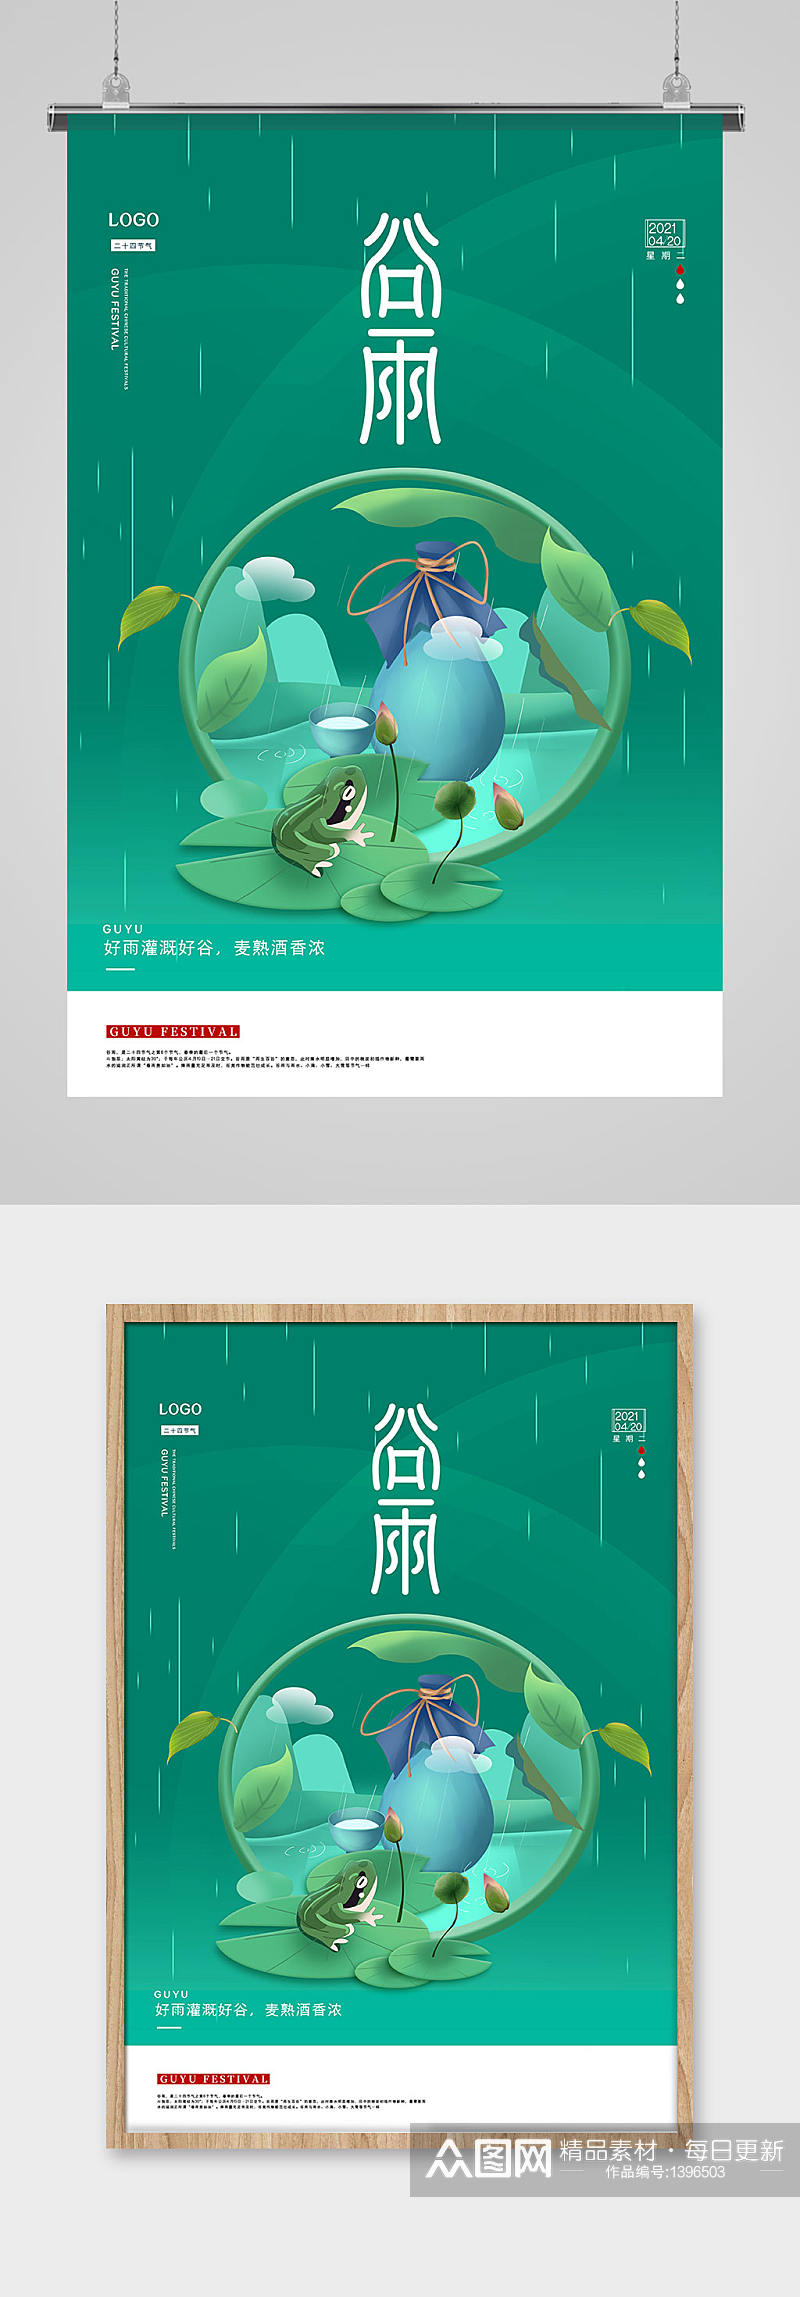 绿色复古中国风酒类谷雨节气海报素材